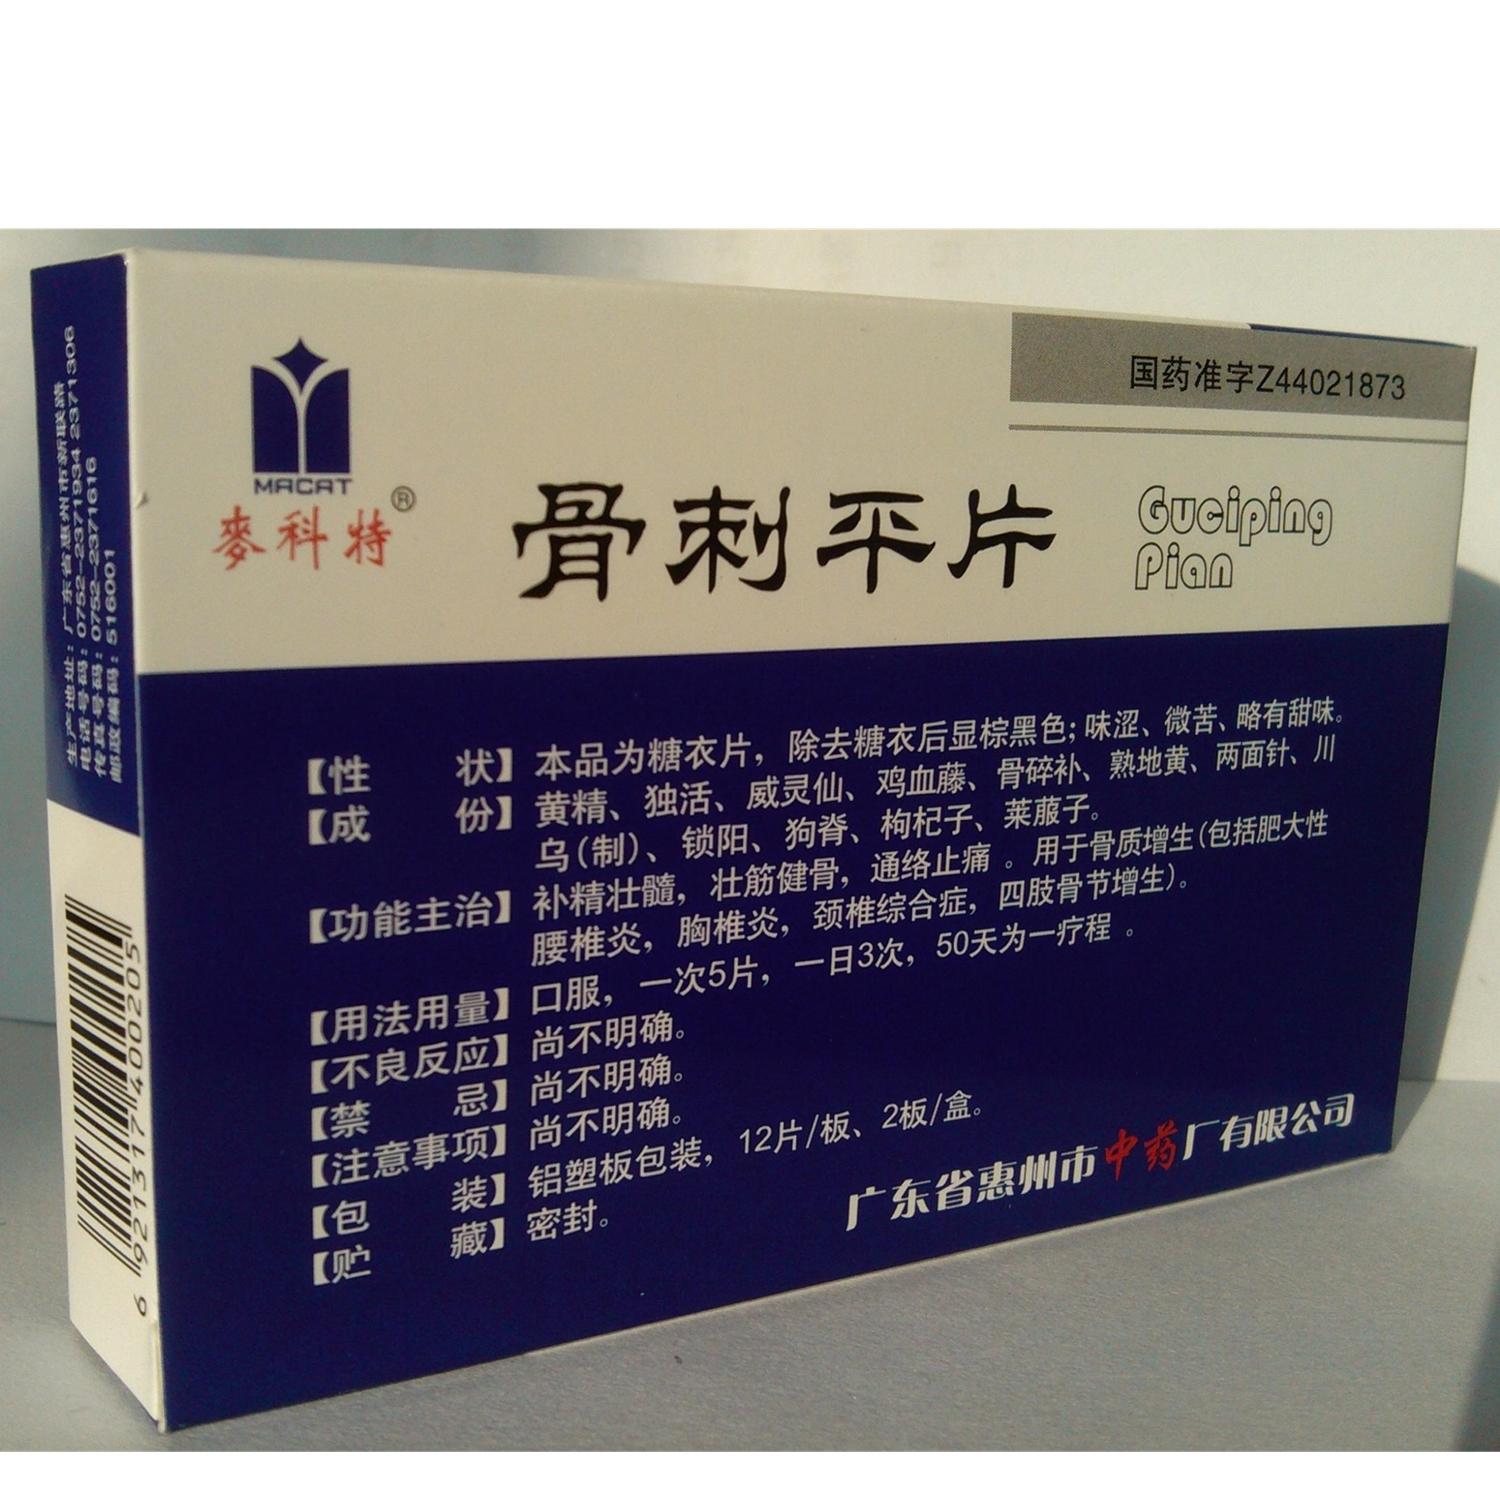 【惠州中药】骨刺平片-广东省惠州市中药厂有限公司